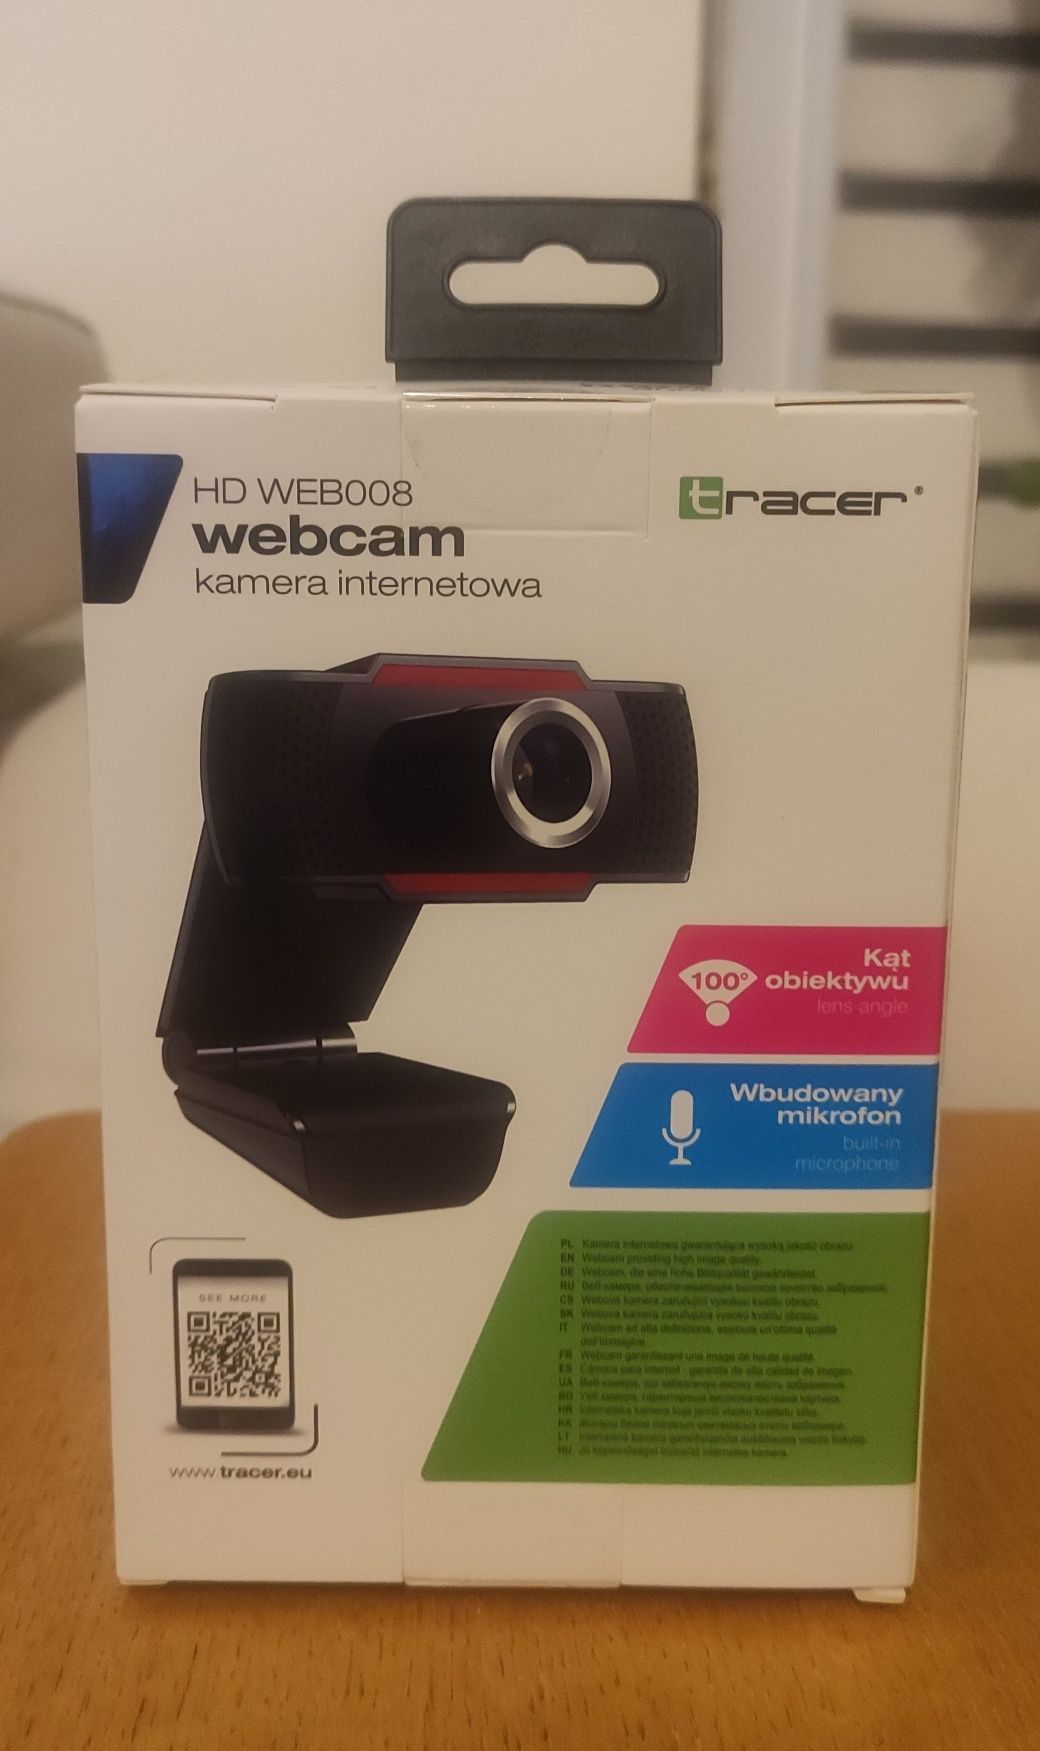 Nowa Kamera internetowa HD WEB008 Tracker